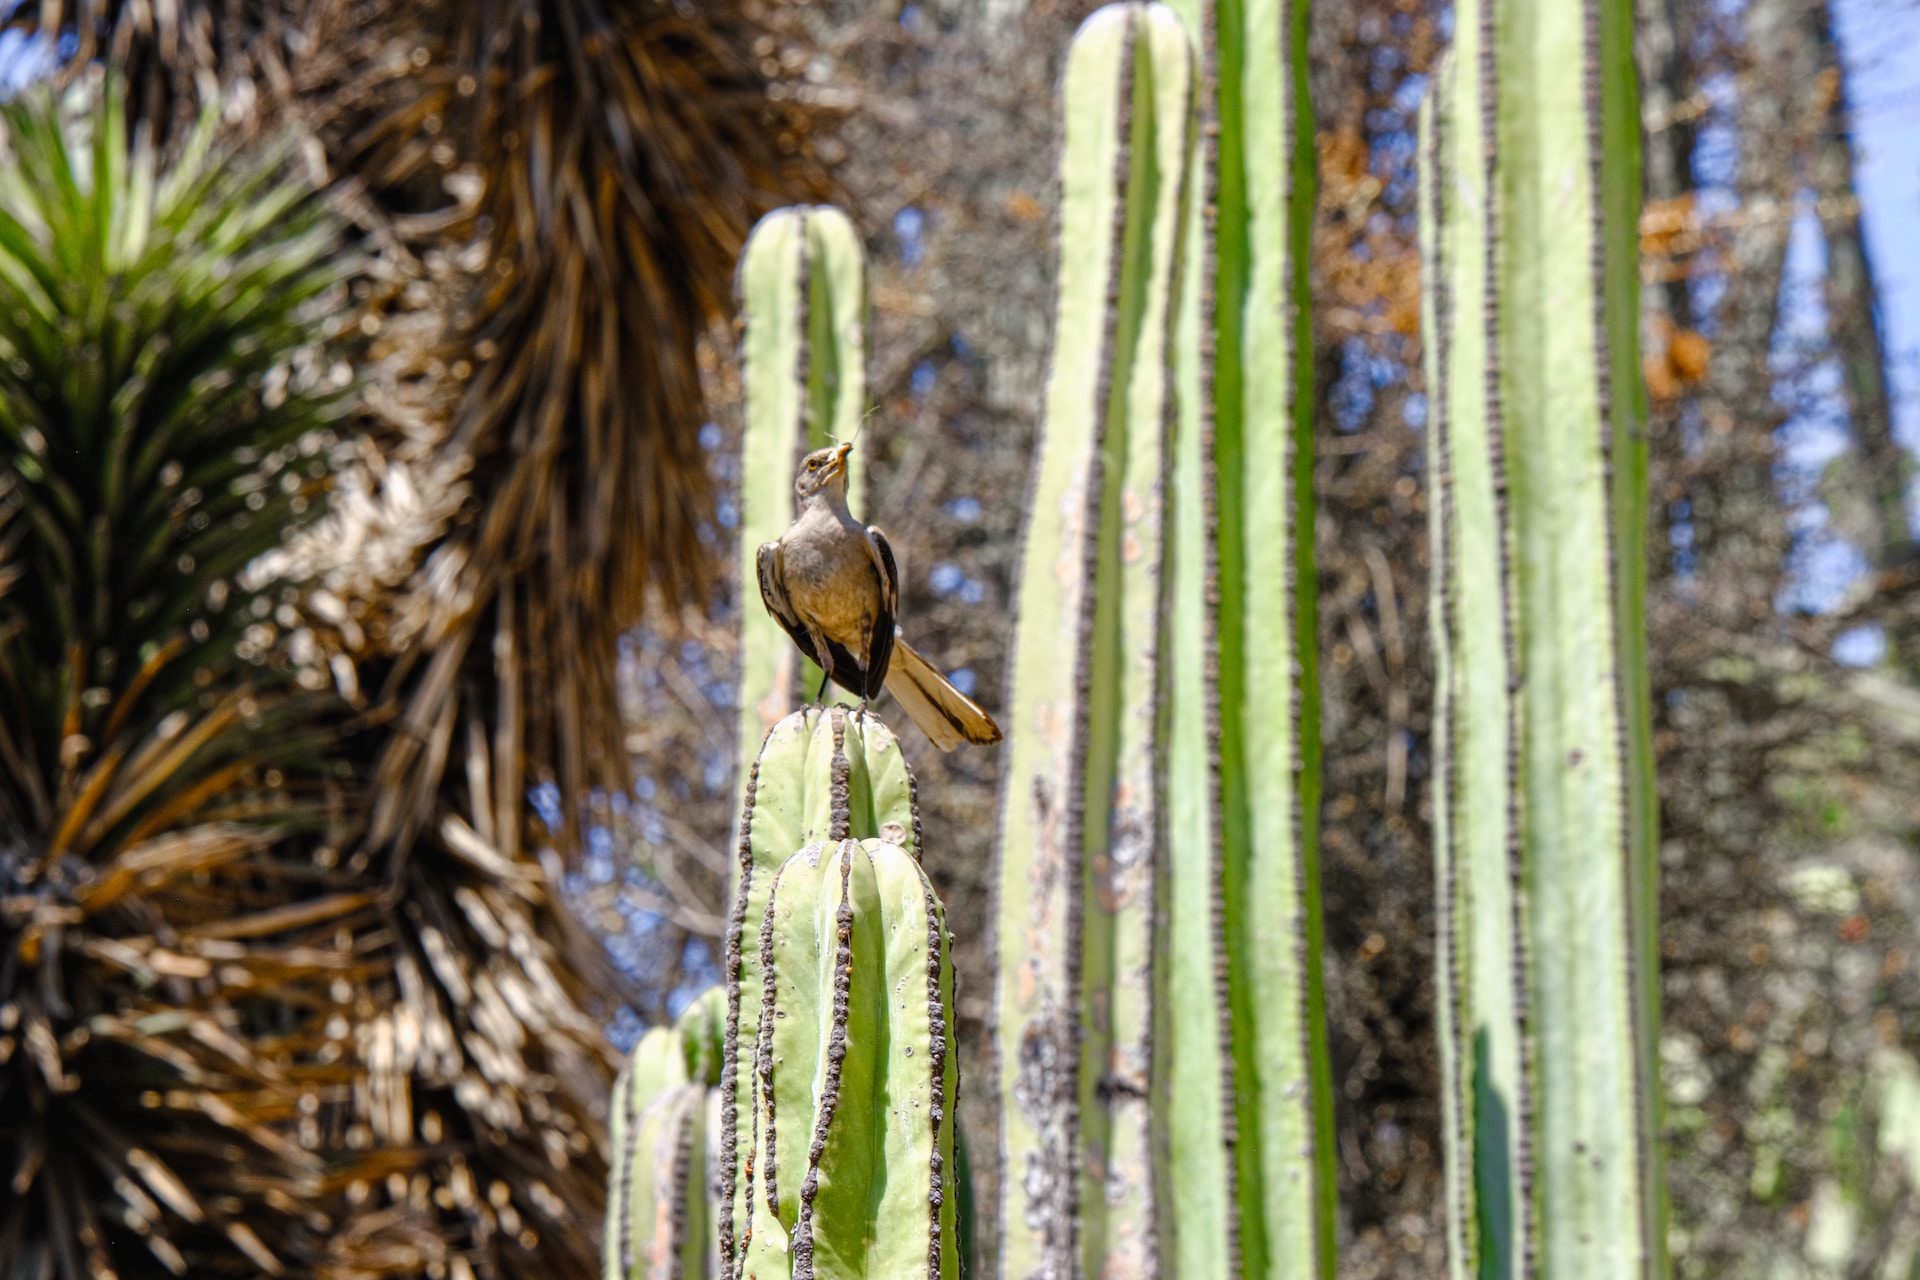 Bird on cactus near Escondido, California.